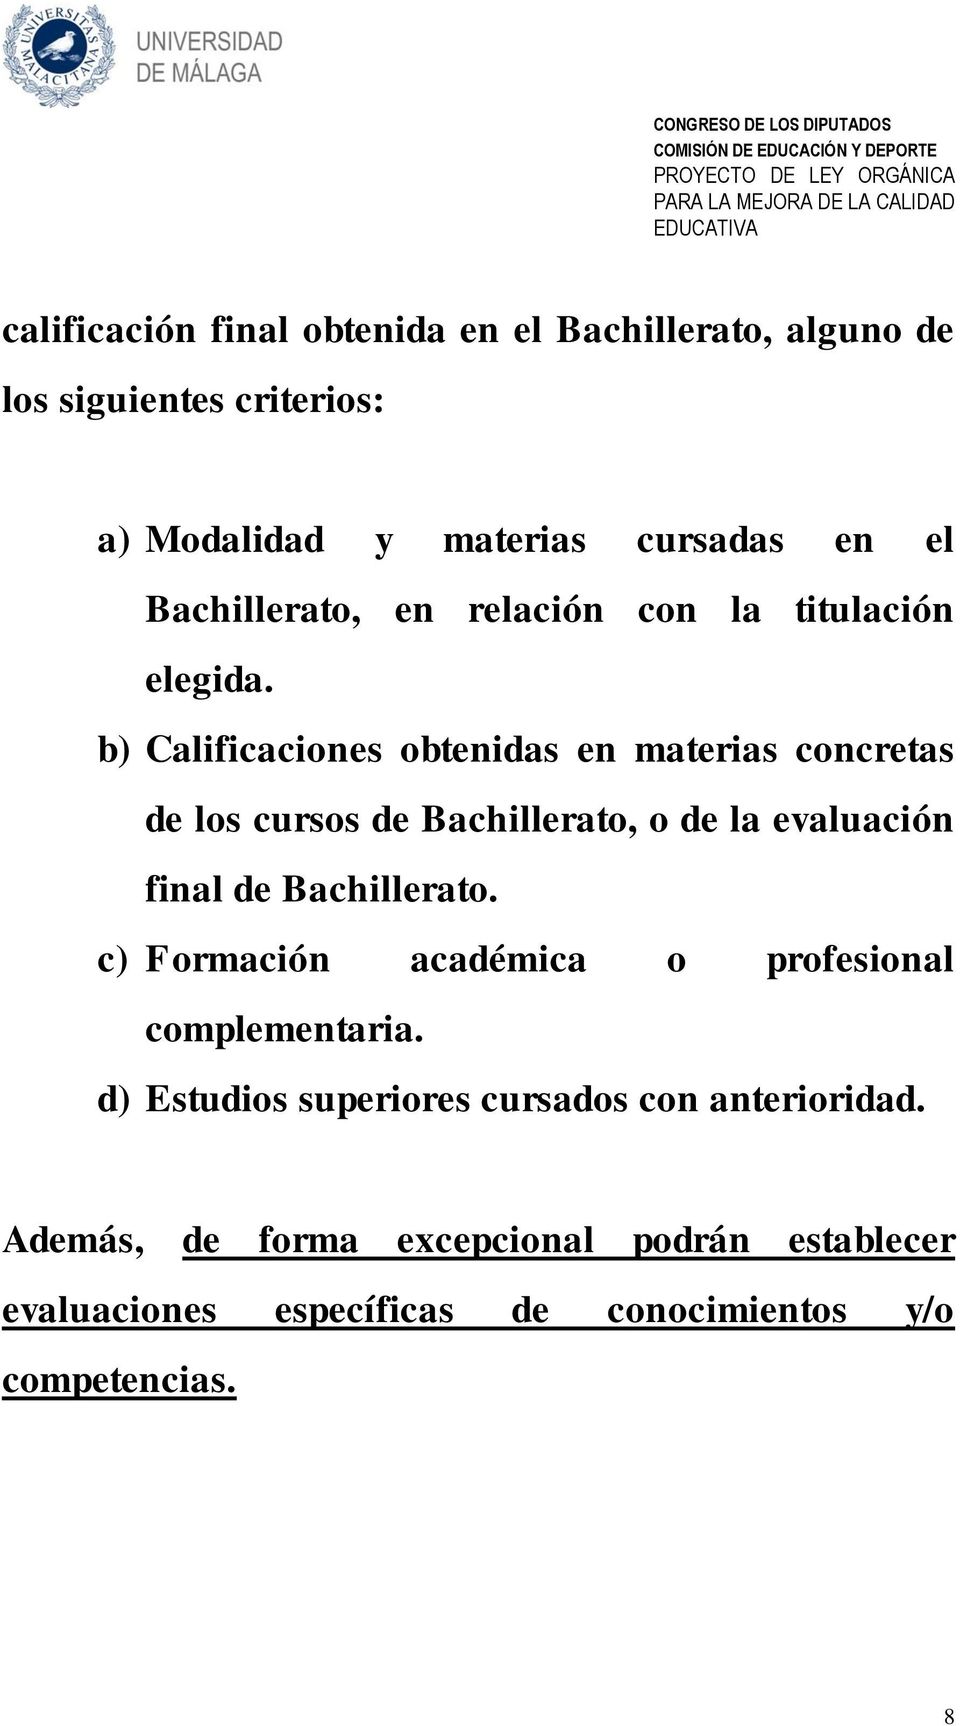 b) Calificaciones obtenidas en materias concretas de los cursos de Bachillerato, o de la evaluación final de Bachillerato.